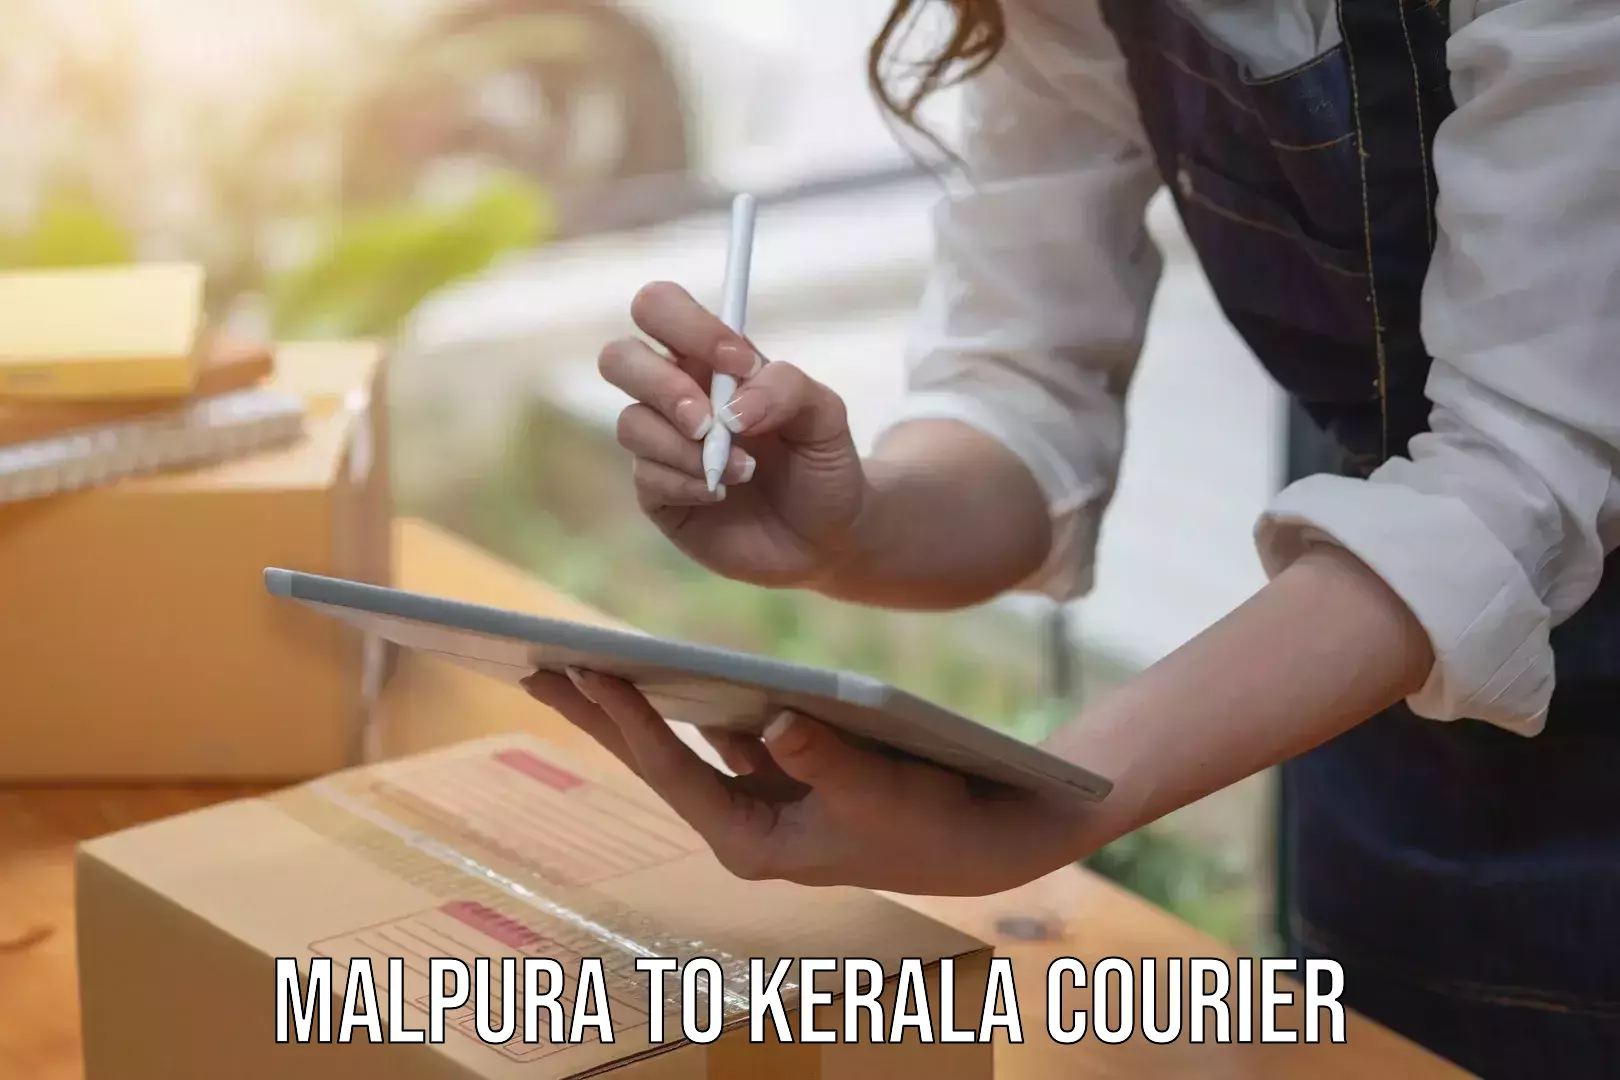 Express delivery capabilities Malpura to Taliparamba